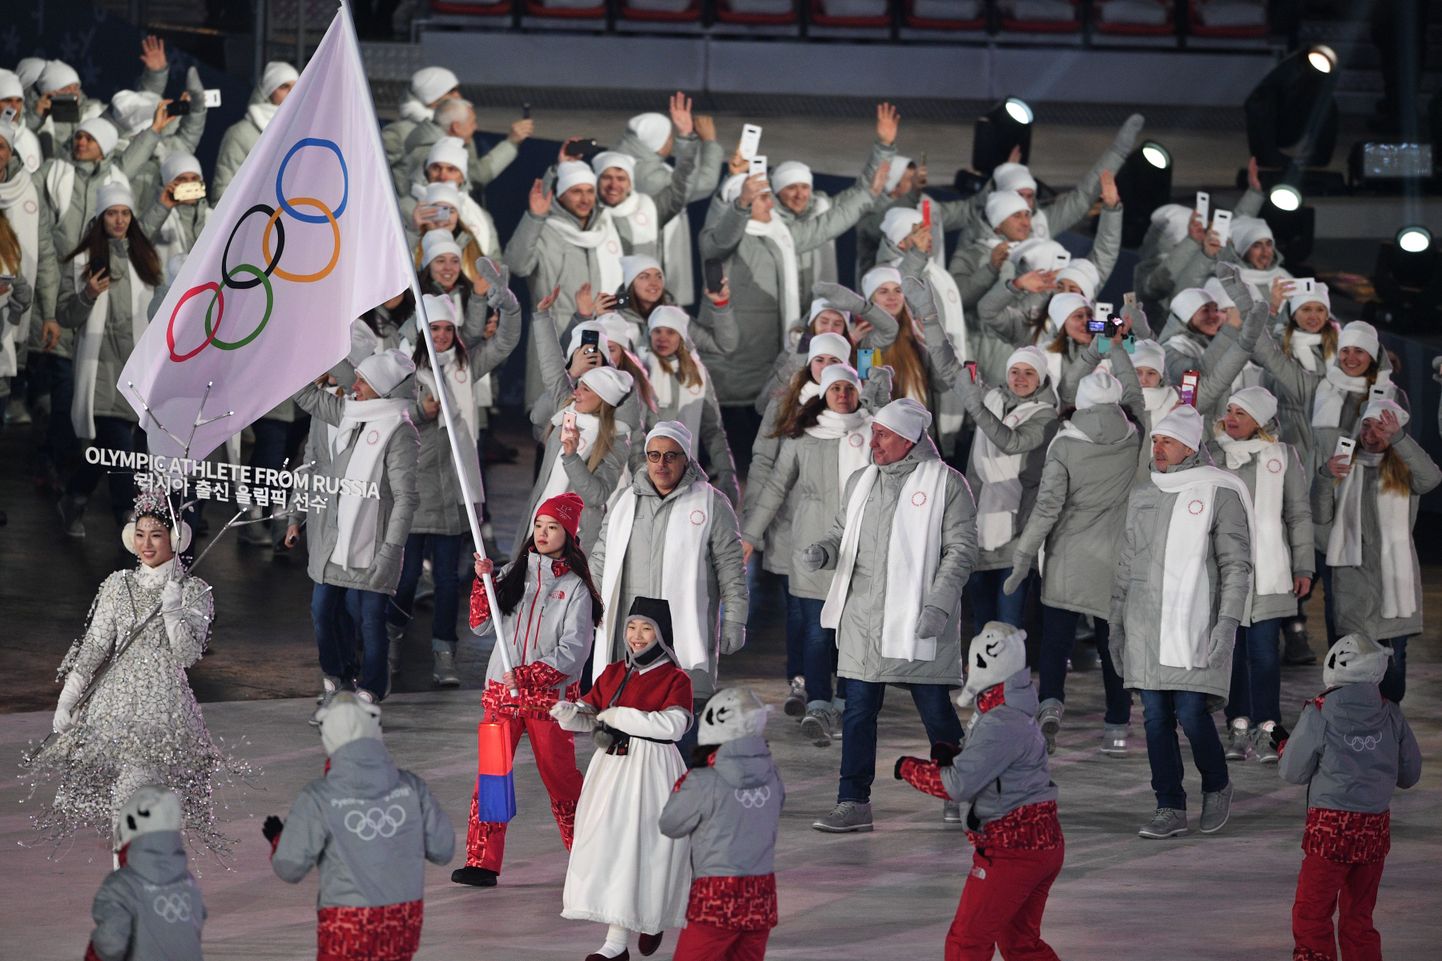 Venemaa sportlaste sissemarss olümpiamängude avamisel. Oma riigi lipuu nad lehvitada ei tohi ja nende puhul on kasutusel olümpialipp.